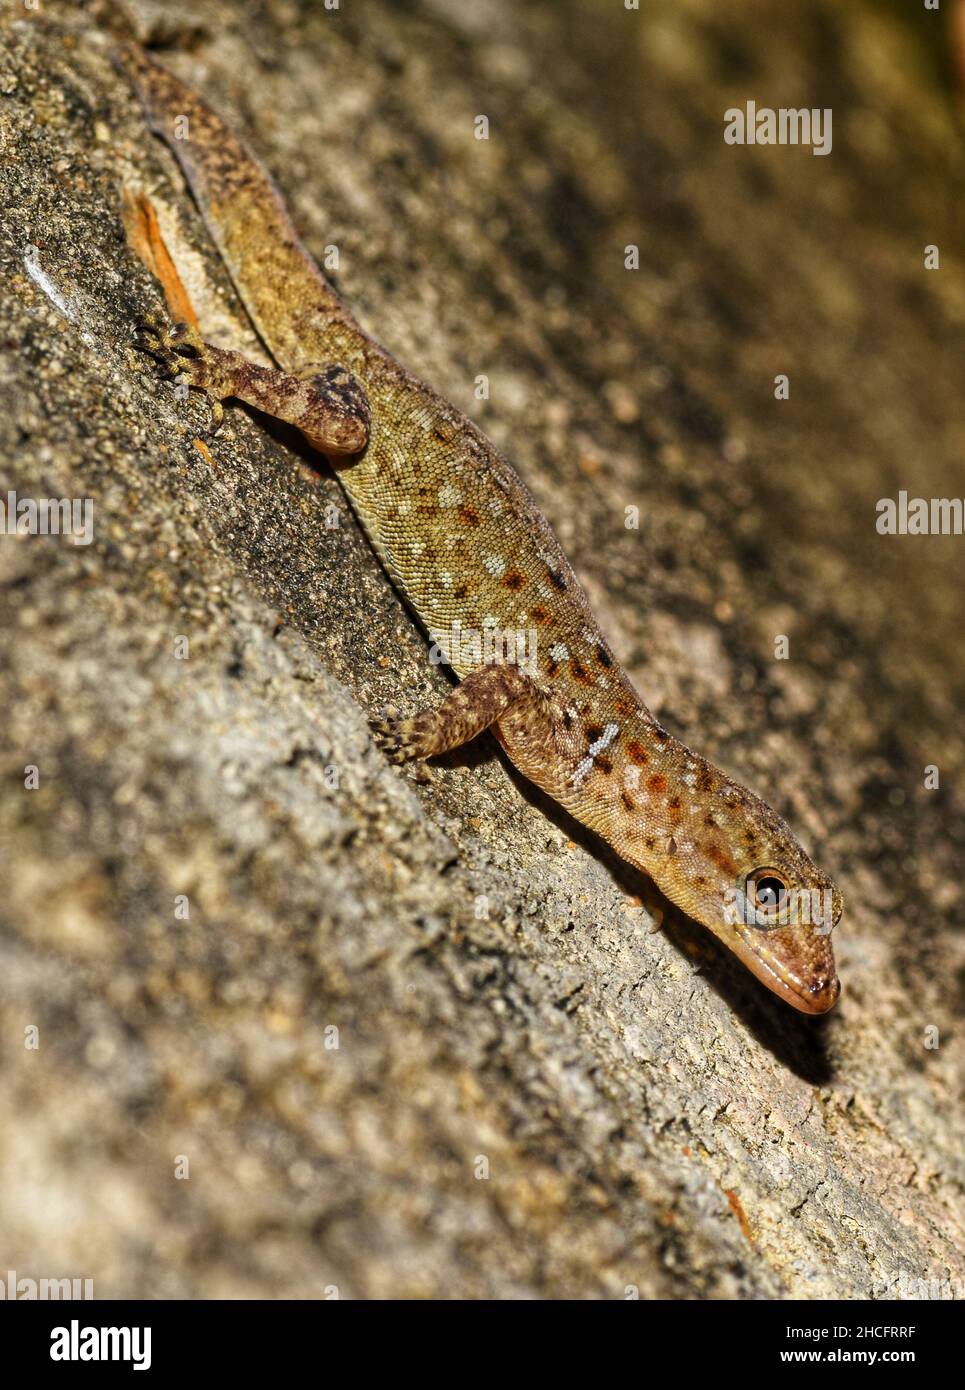 Wiegmann's striped gecko scientifically known as Gonatodes vittatus. This photo was taken on the Caribbean island of Trinidad. Stock Photo